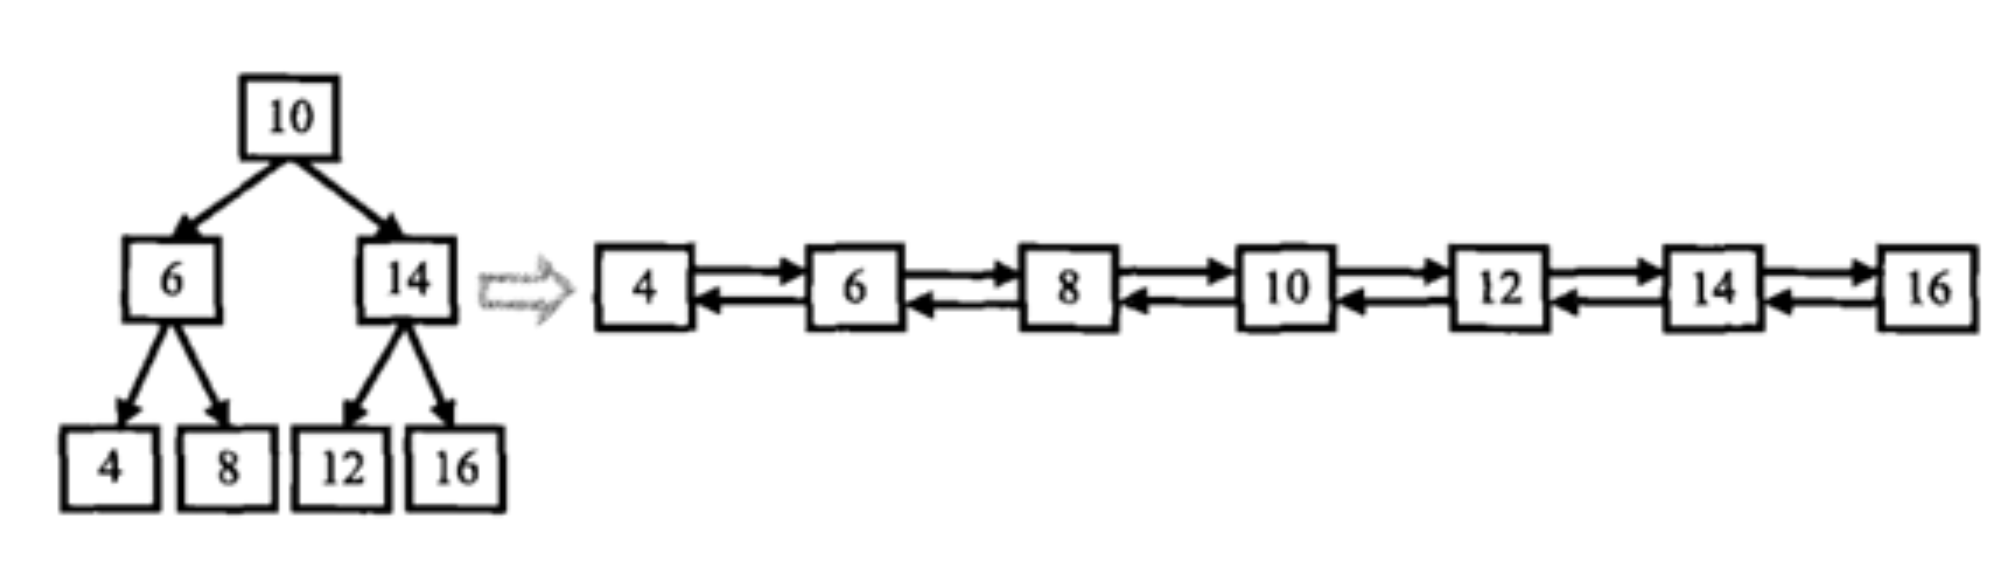 剑指offer(C++)-JZ36：二叉搜索树与双向链表(数据结构-树)